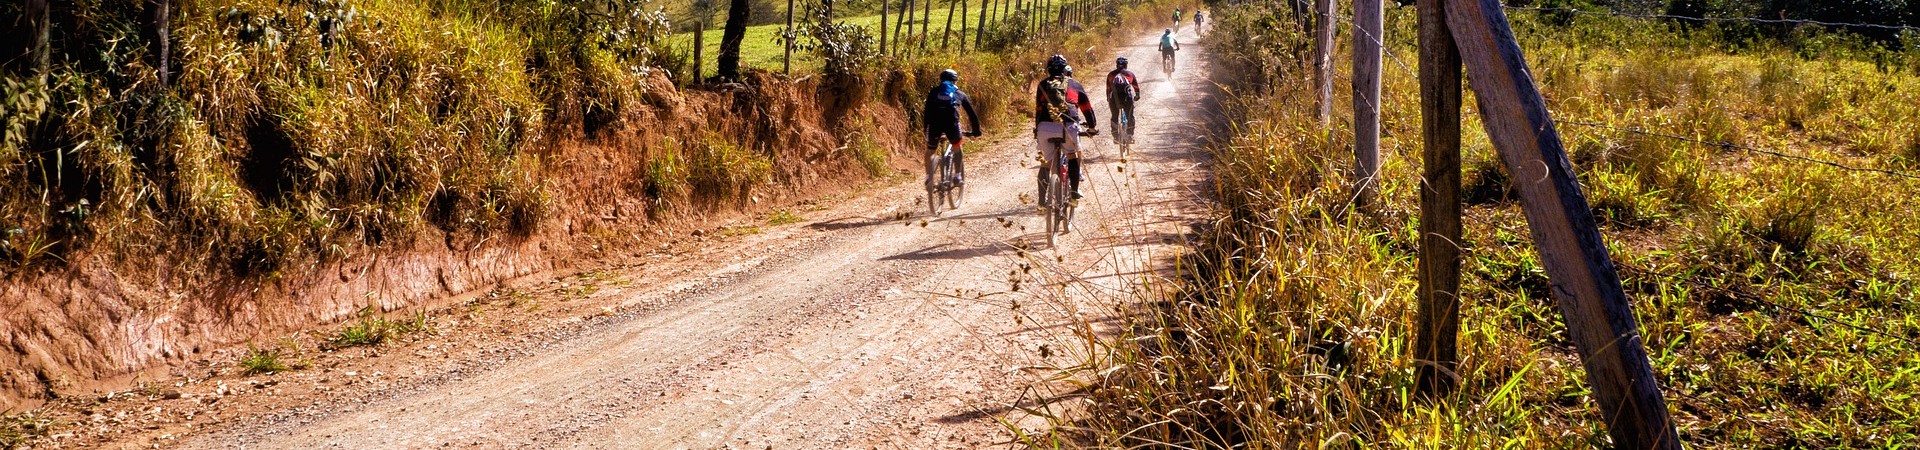 Visit Sogliano al Rubicone - Scopri Sogliano - Itinerari Trekking&Bike - Banner New